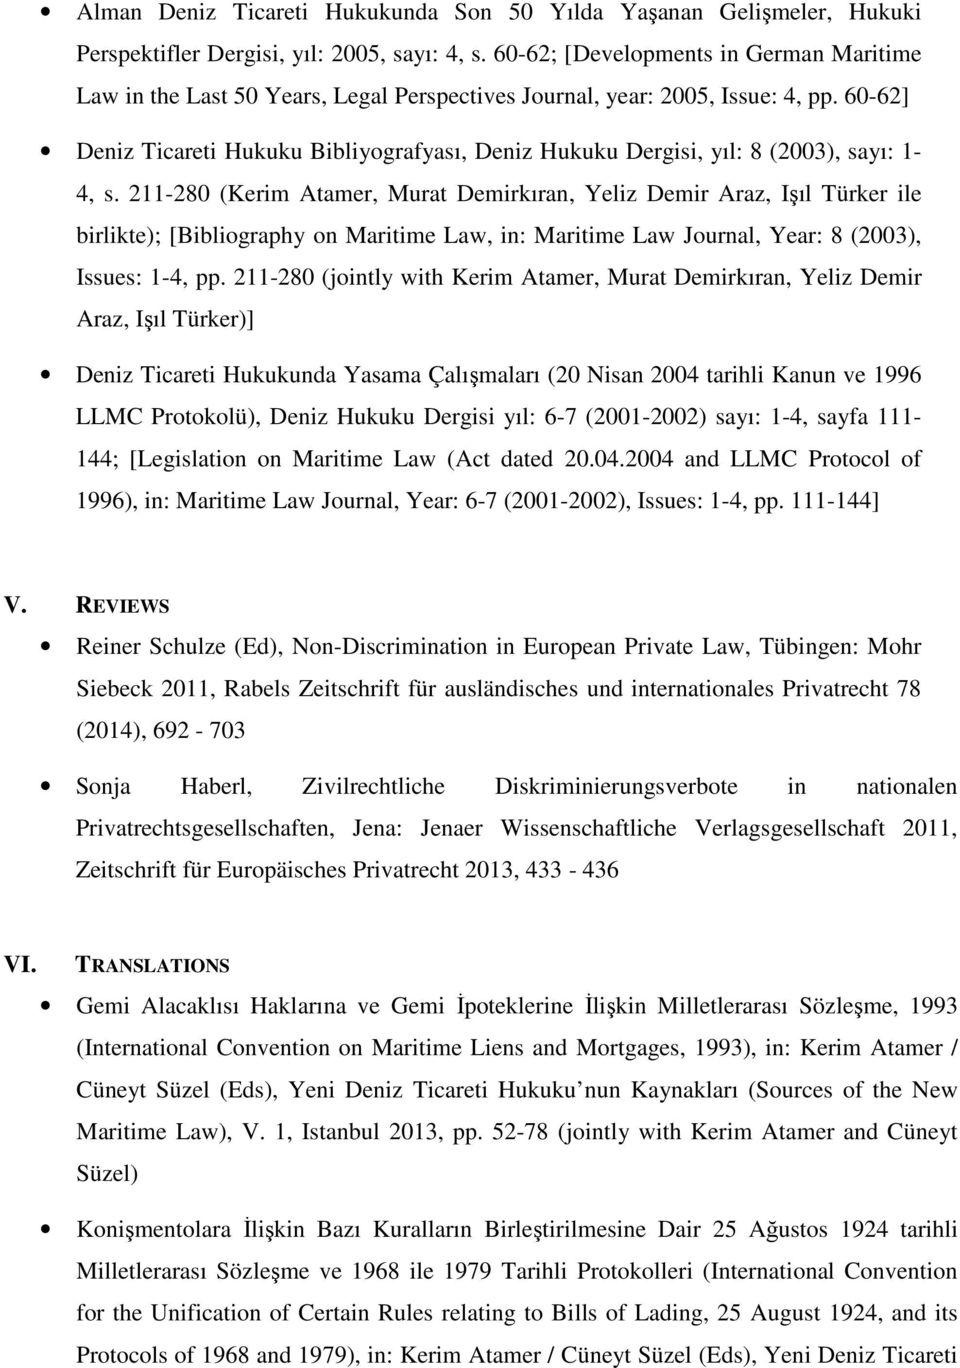 60-62] Deniz Ticareti Hukuku Bibliyografyası, Deniz Hukuku Dergisi, yıl: 8 (2003), sayı: 1-4, s.